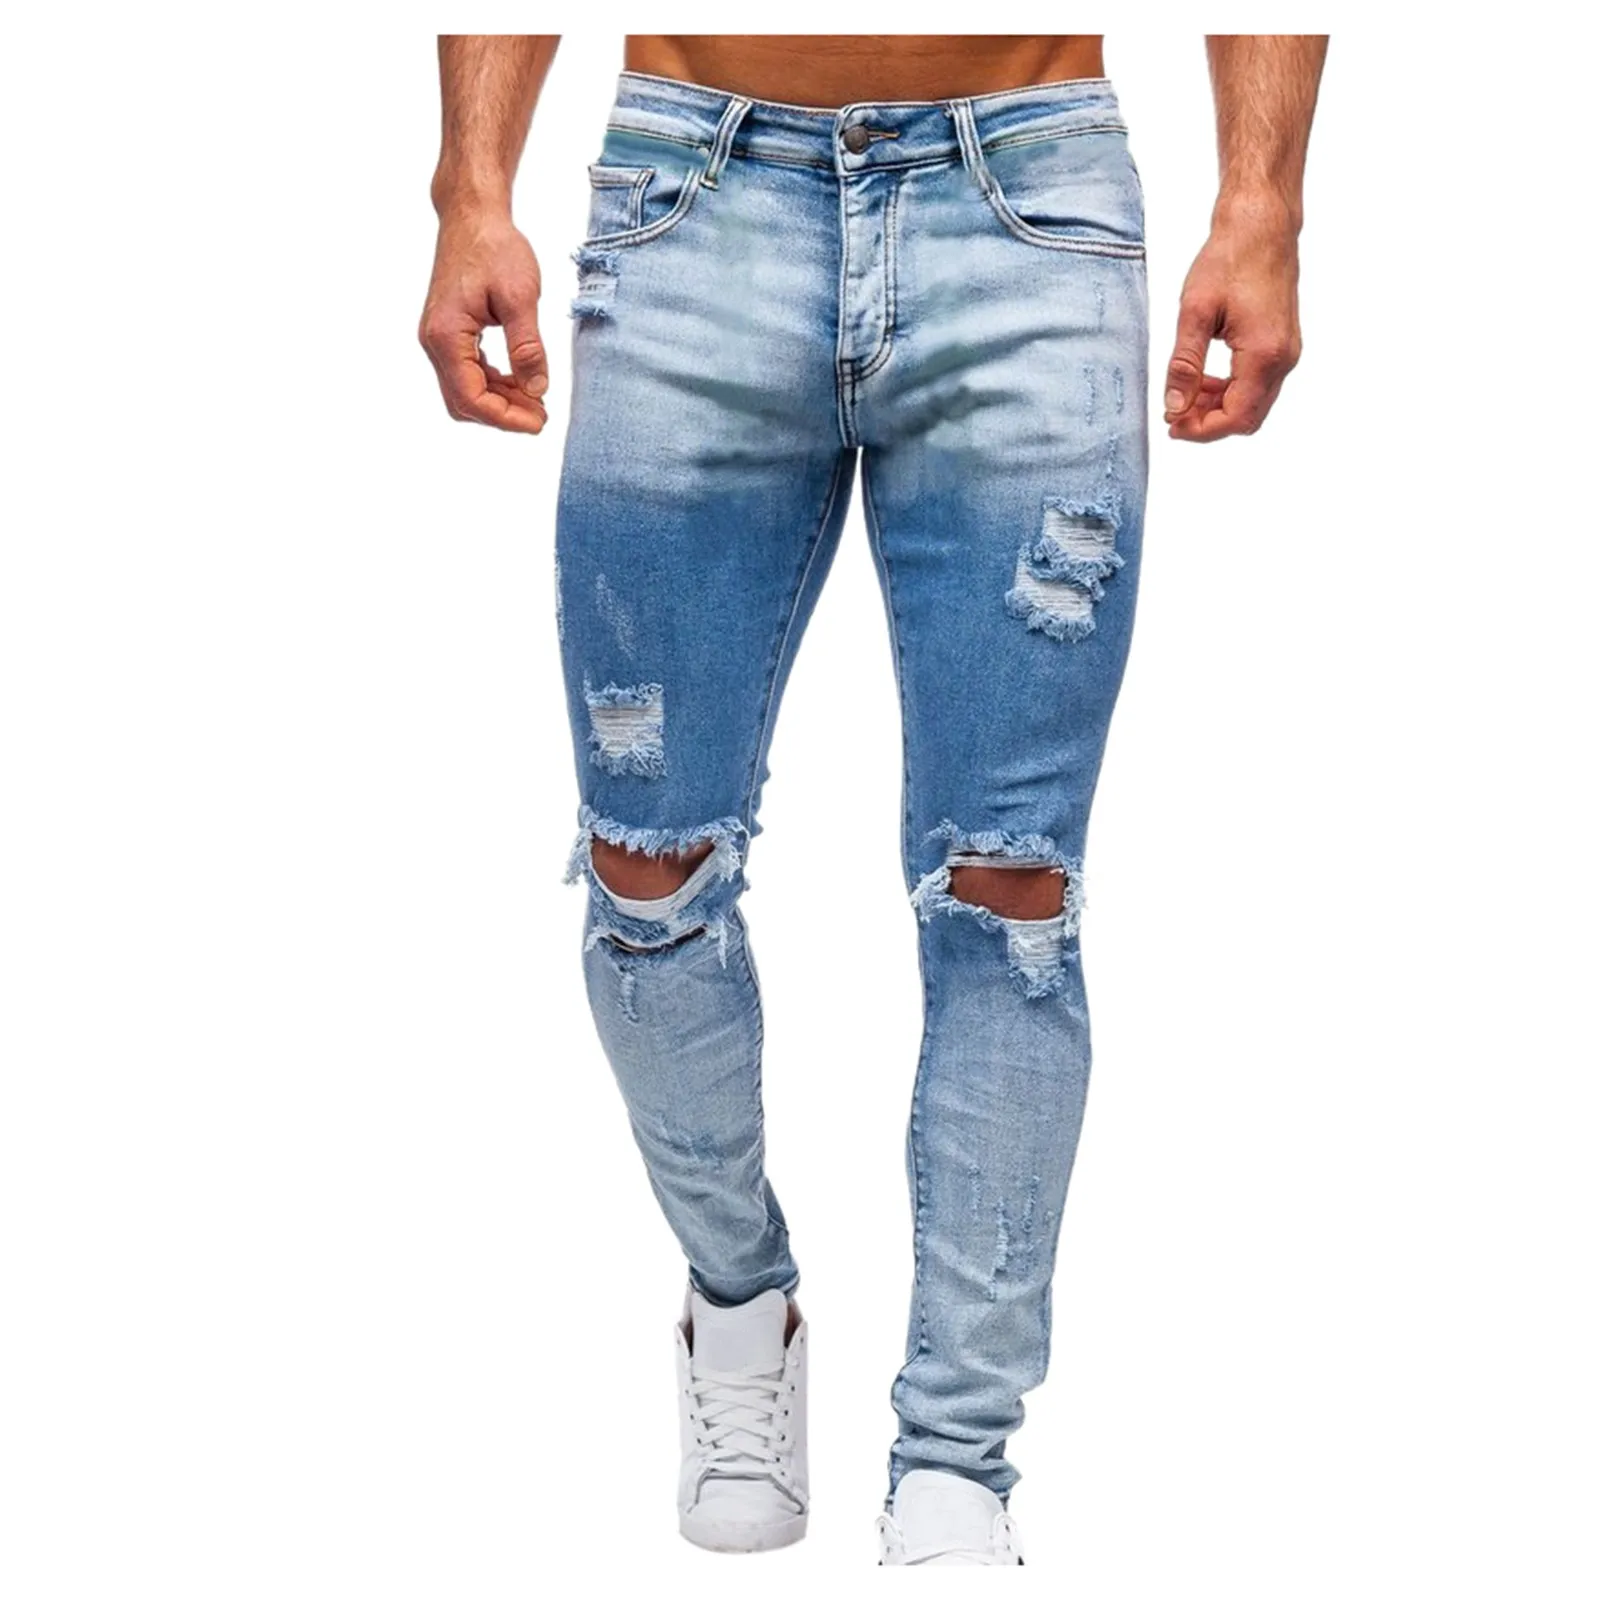 

Мужские повседневные джинсовые брюки на молнии, с открытой планкой, с водной росписью, прямые джинсы с дырками, тканые облегающие модные брю...